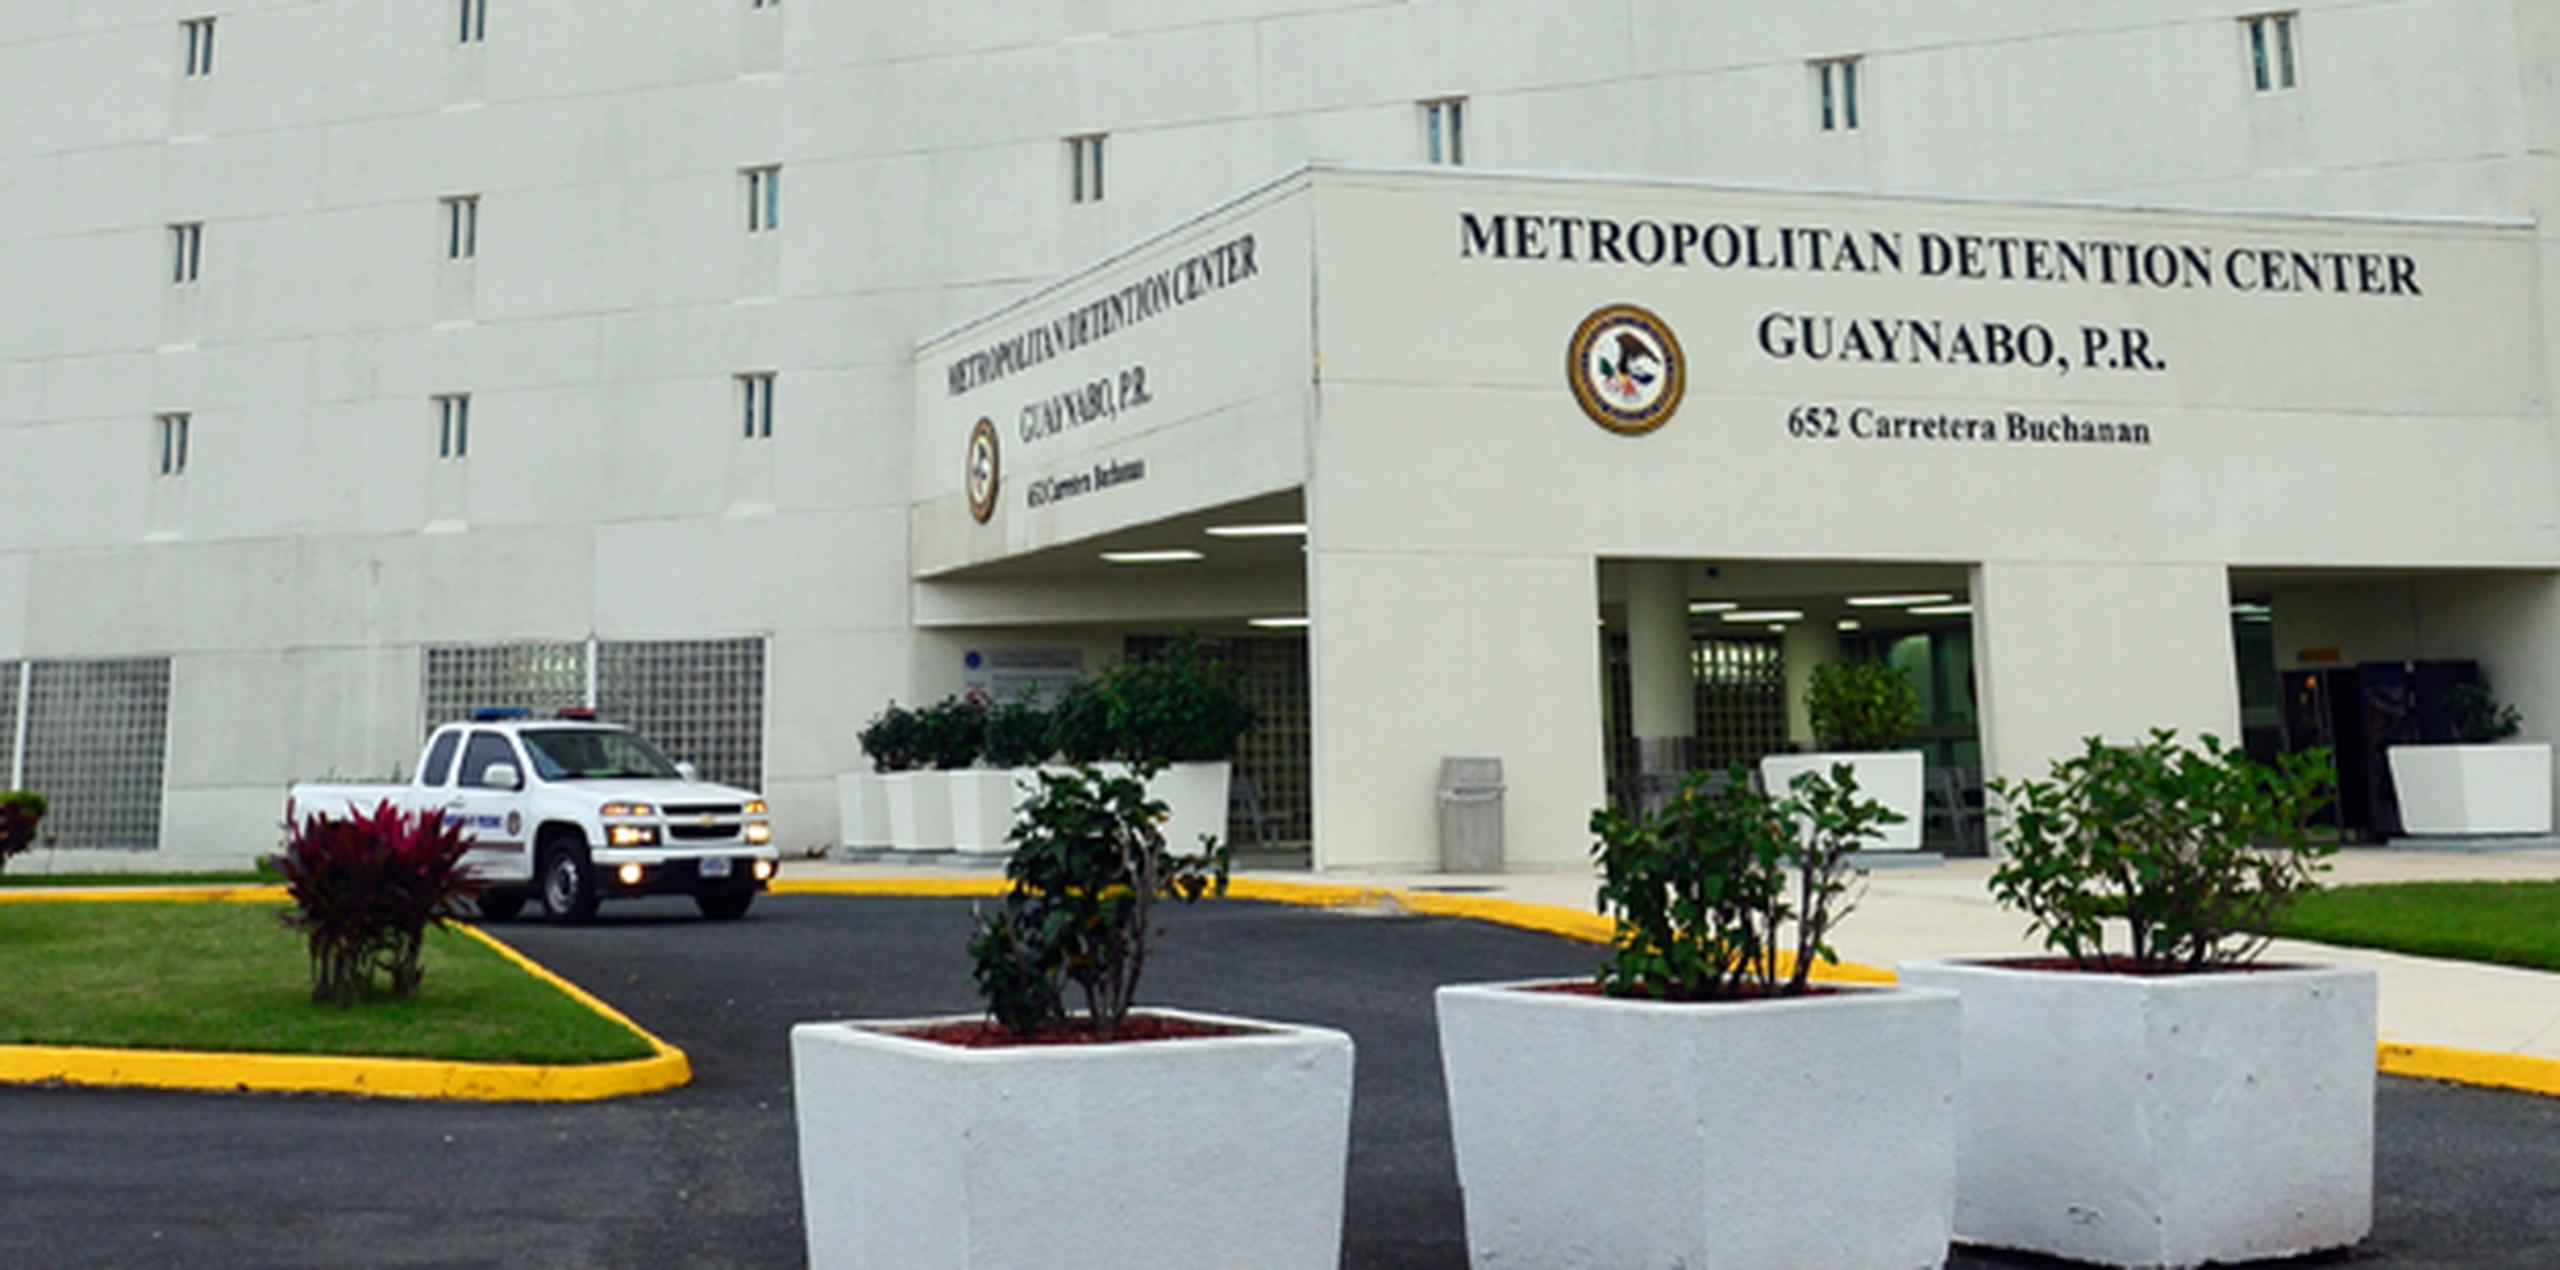 Soto Flores, quien se encuentra preso en el Centro Metropolitano de Detención federal de Guaynabo, salió de la sala de López rodeado de agentes federales. (Archivo)